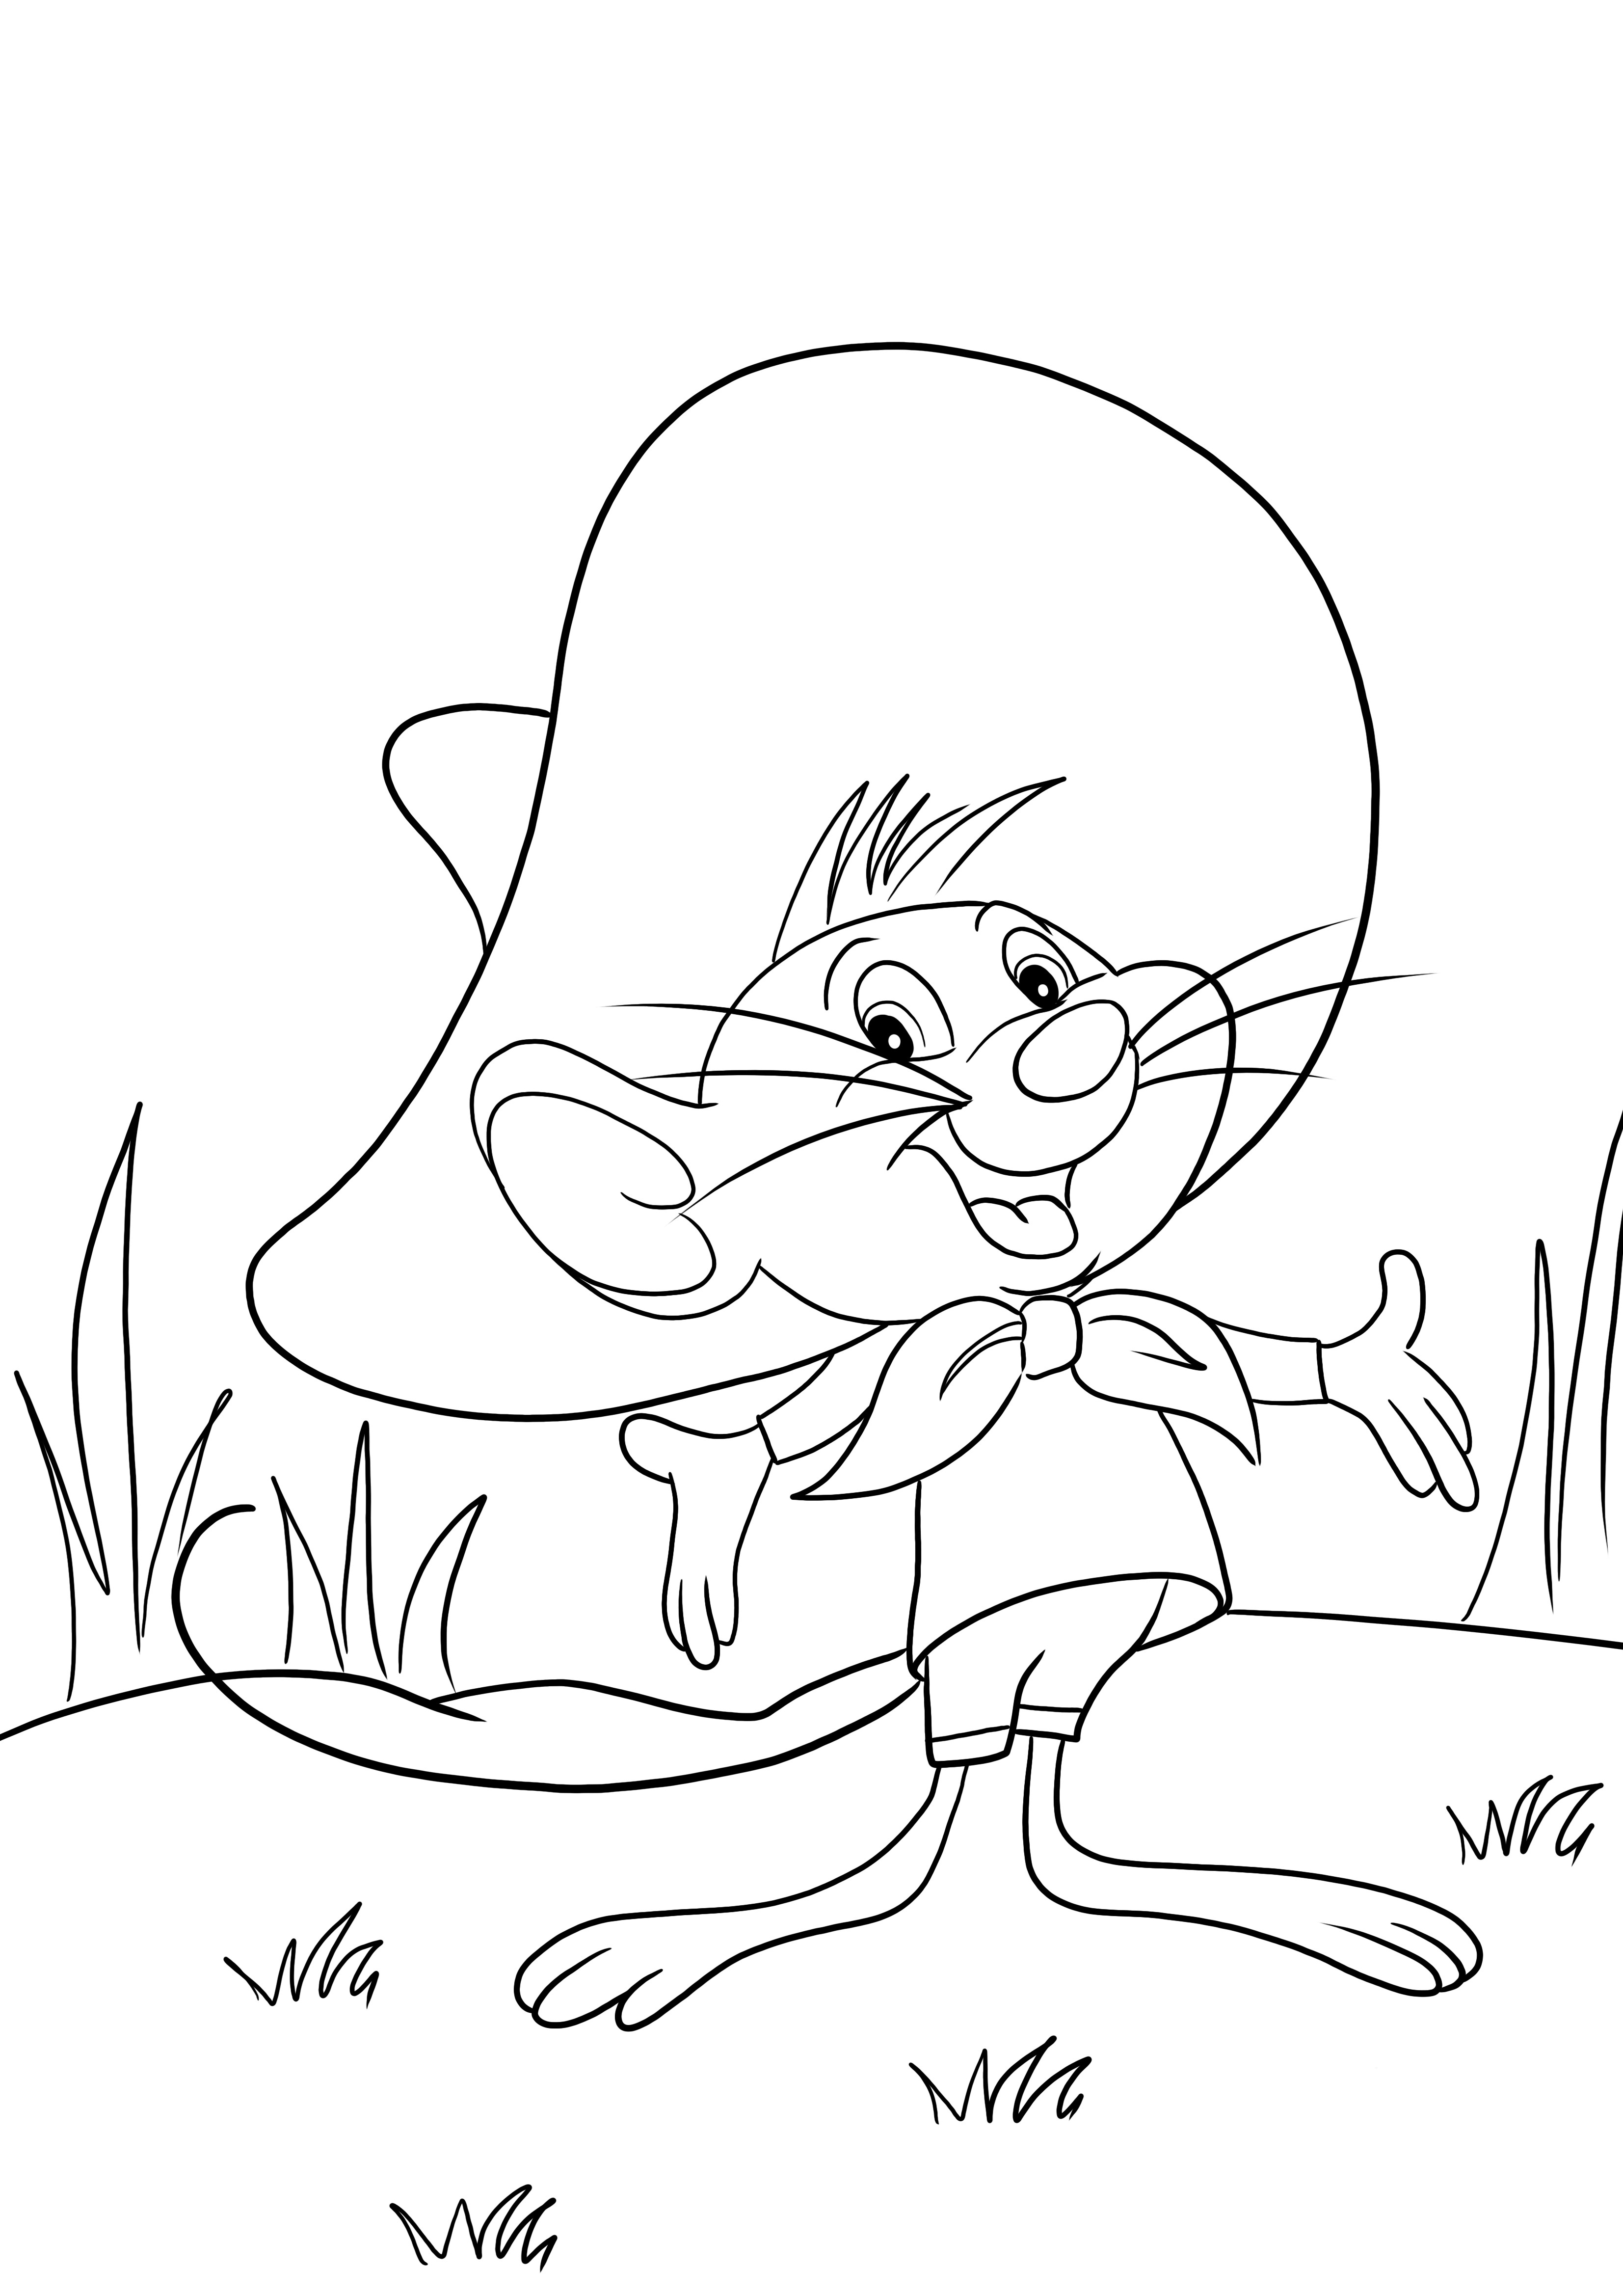 Nuestro personaje favorito de Looney Tunes, Li'l Sneeze, imprimible gratis para colorear